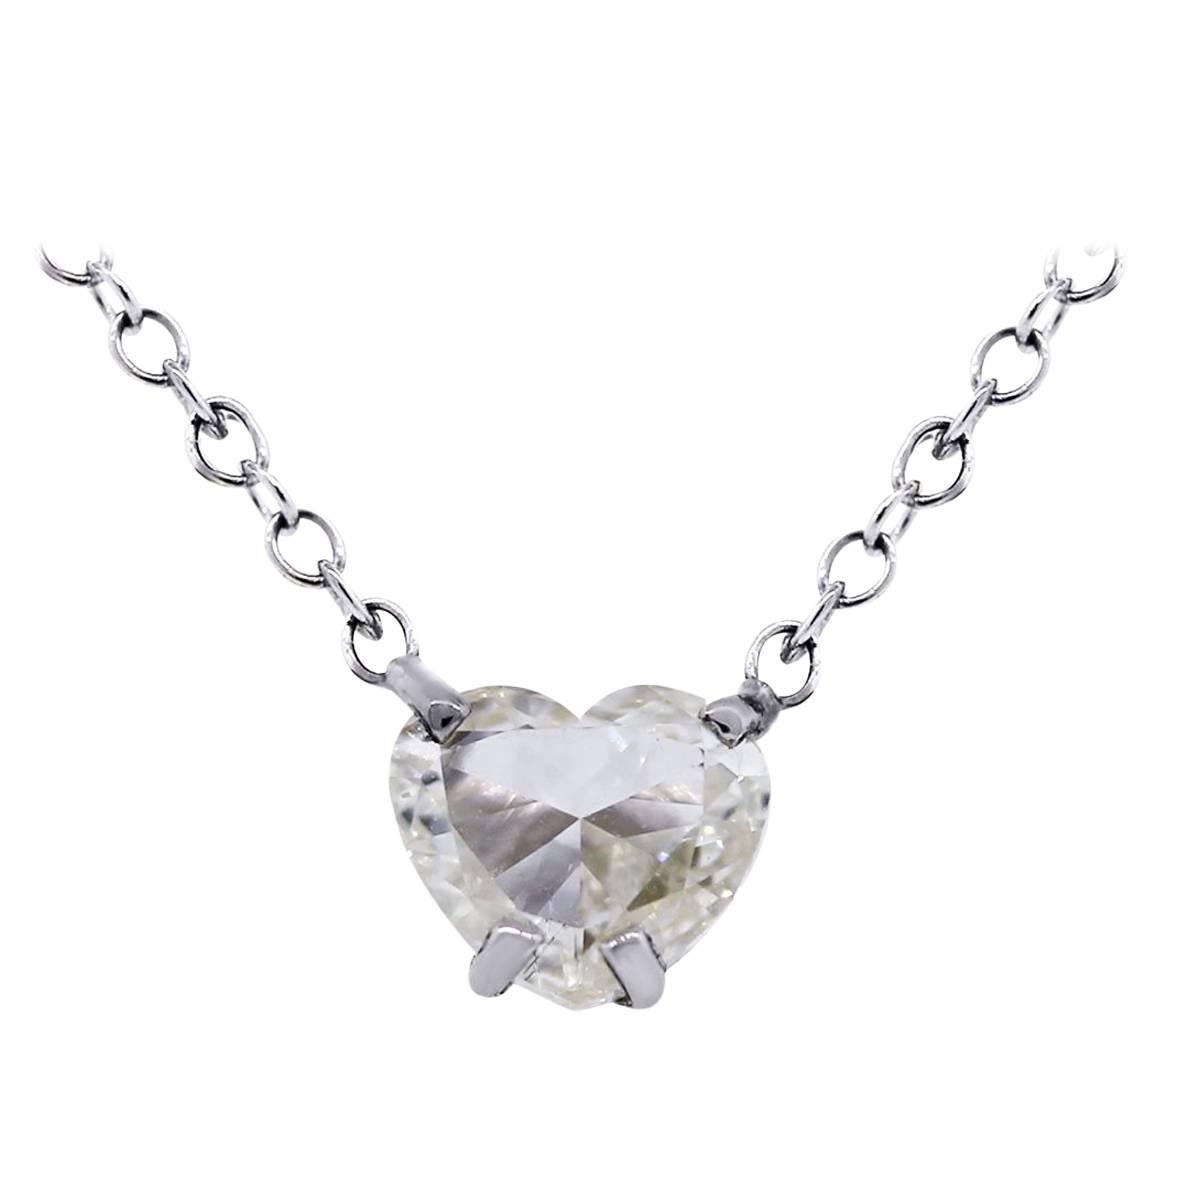 1.02 Carat Heart Shape Diamond Pendant Necklace